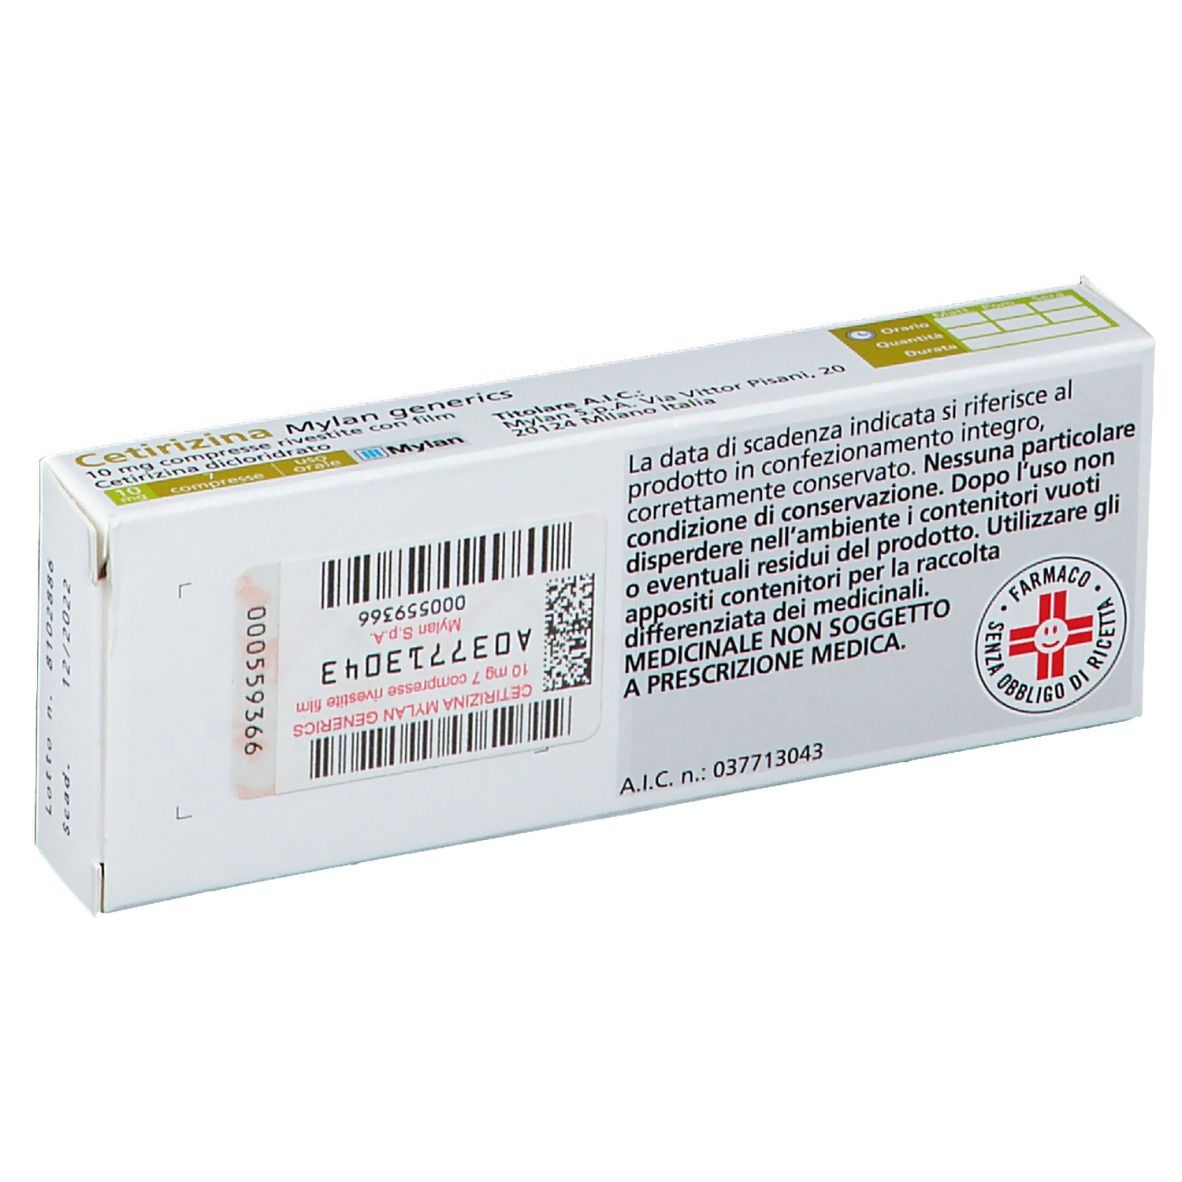 Cetirizina Mylan generics 10 mg Compresse rivestite